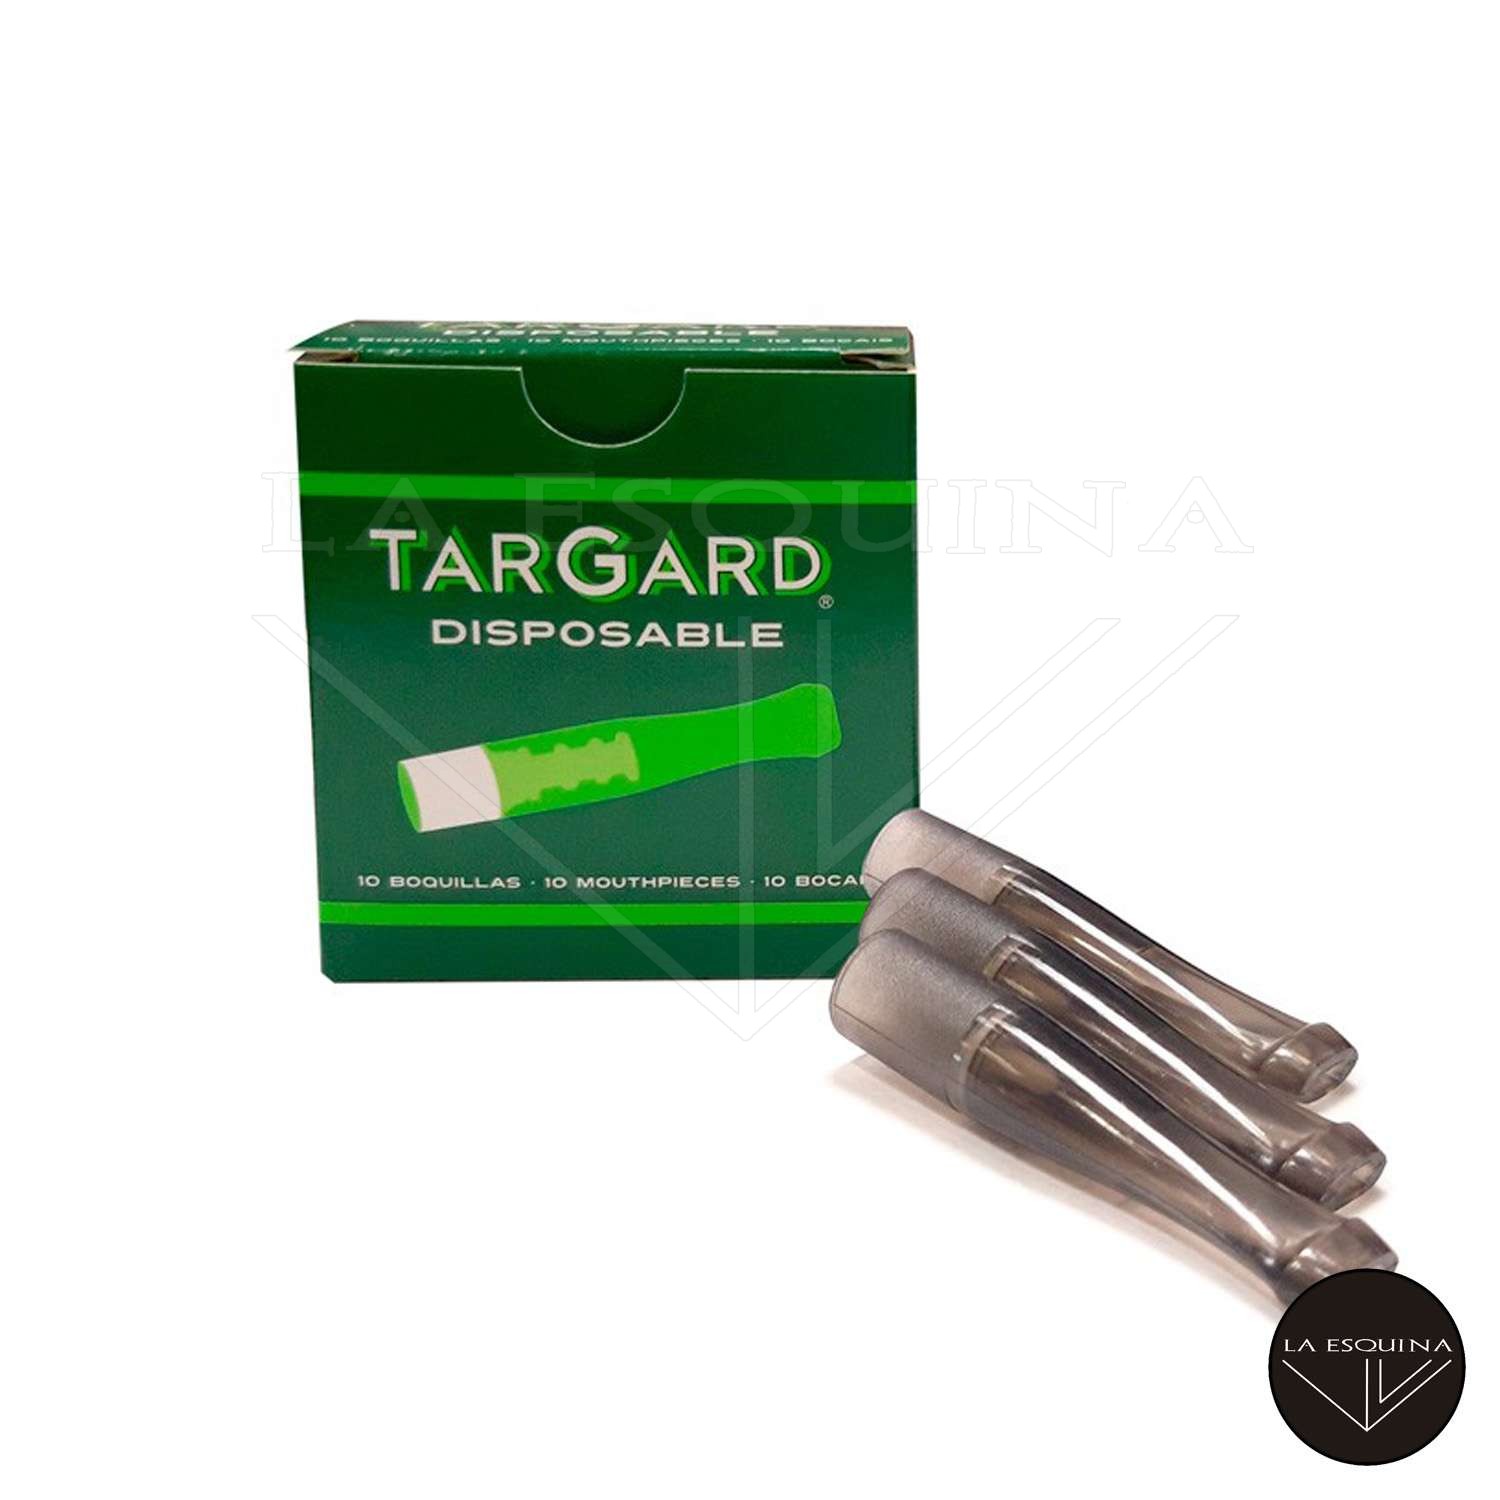 Filtros Disposable TAR GARD Boquillas